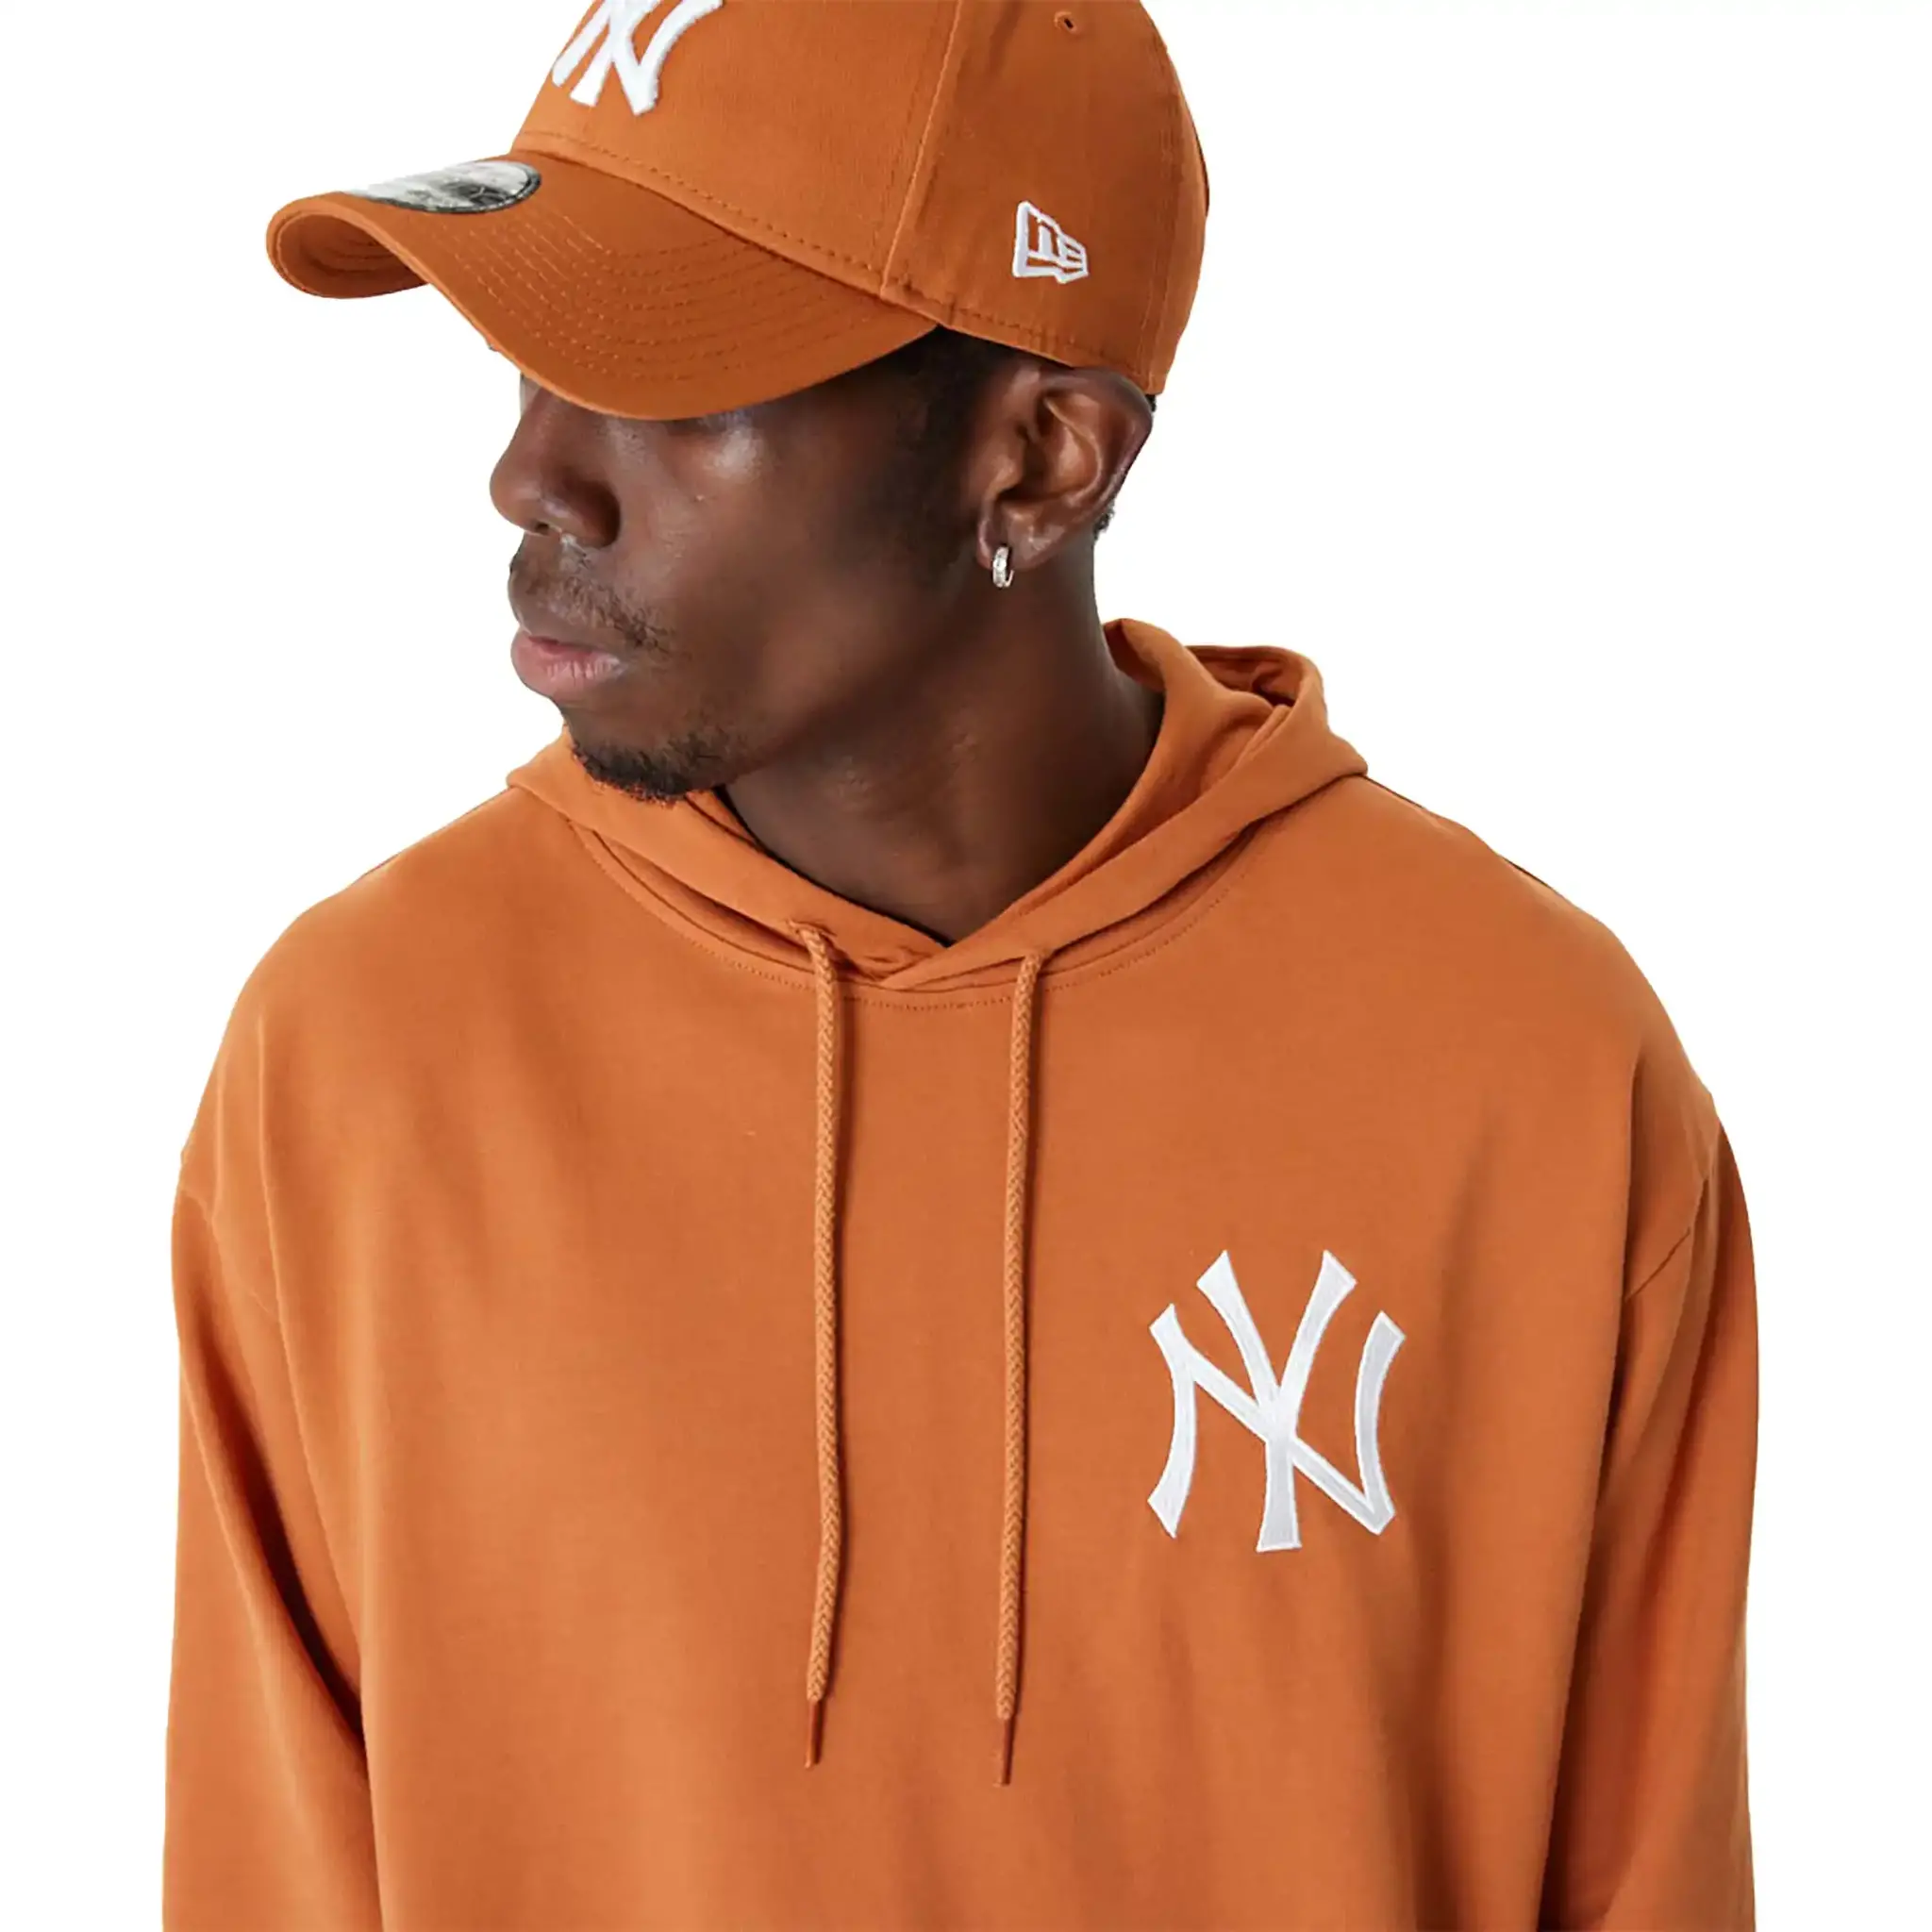 NEW] New York Yankees Sweater